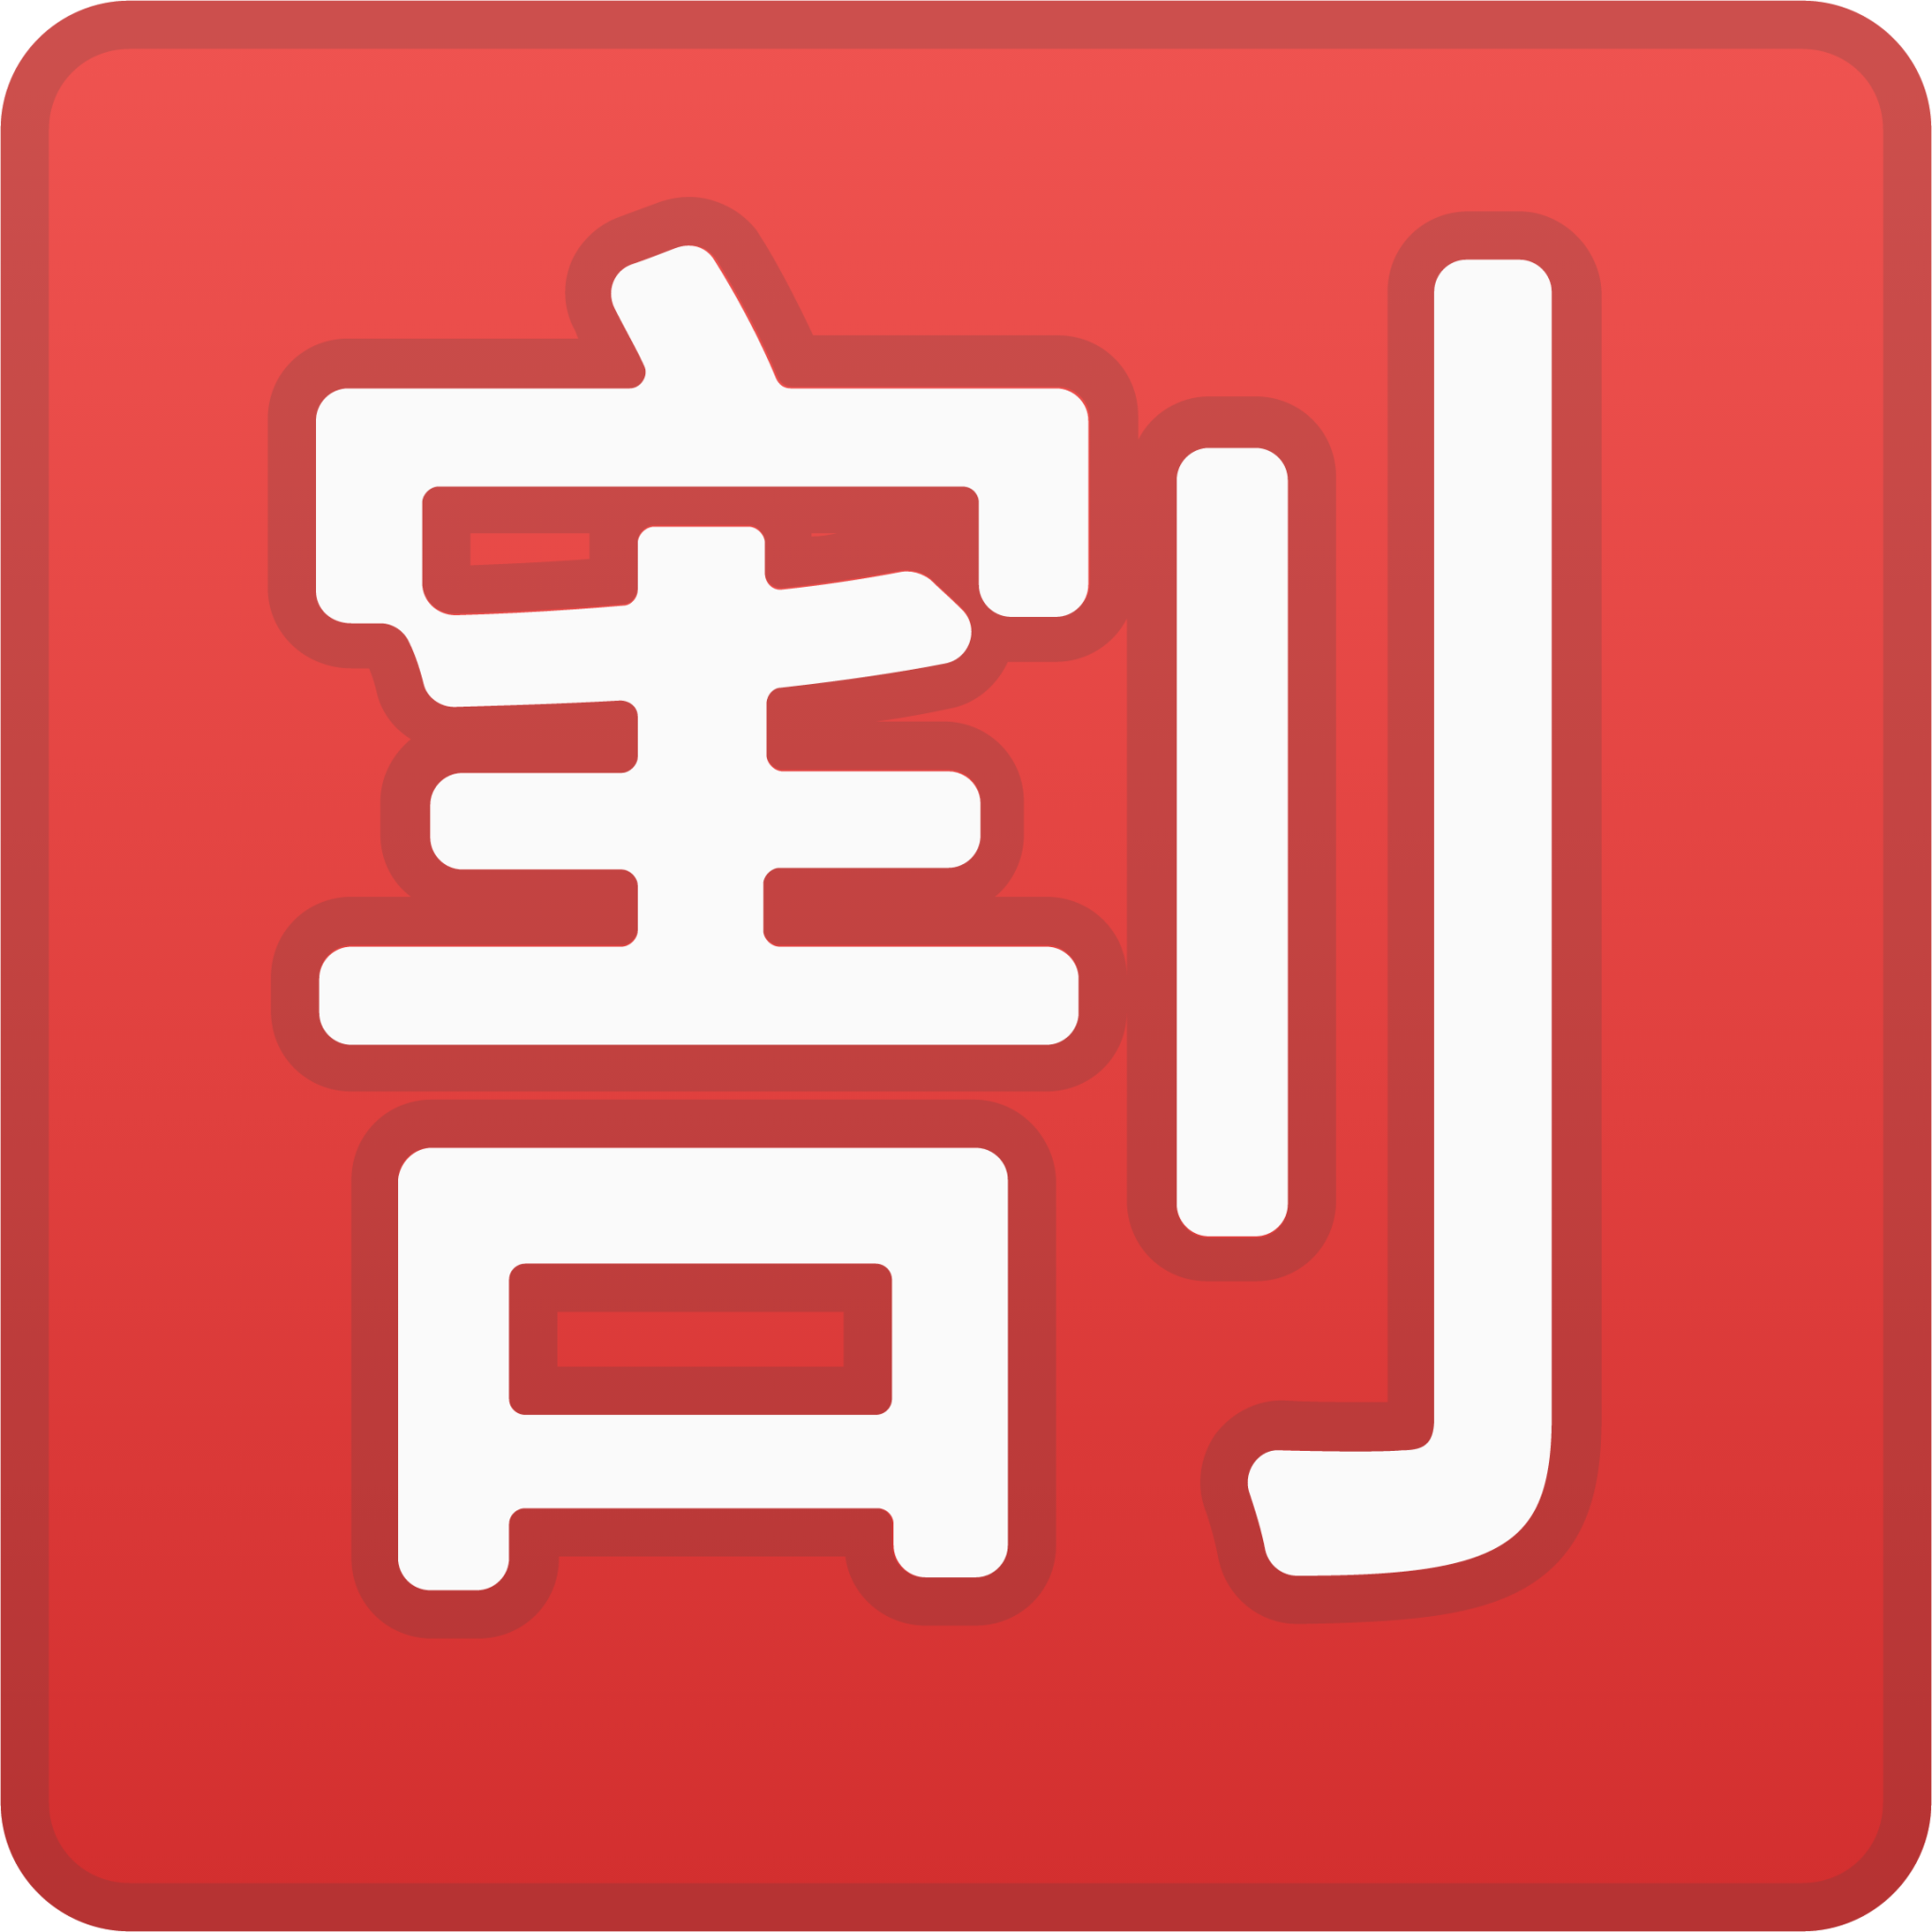 Japanese “discount” button emoji